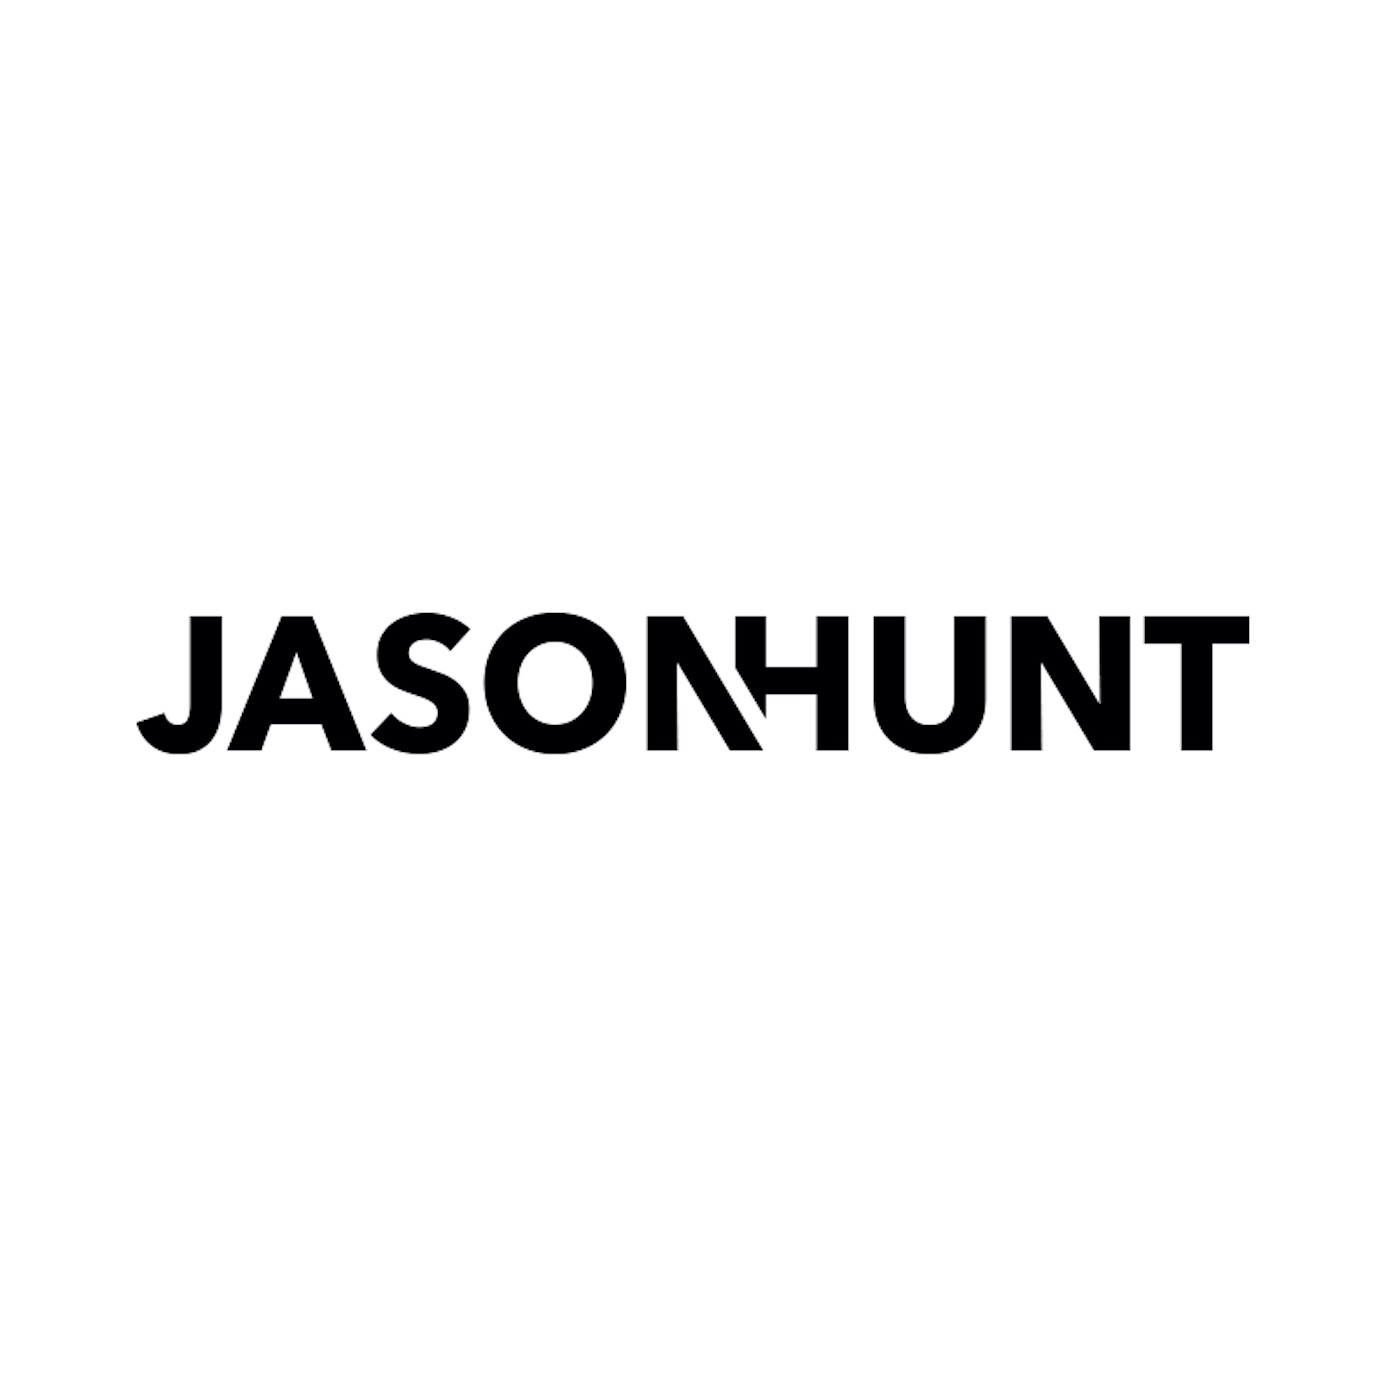 Jason Hunt